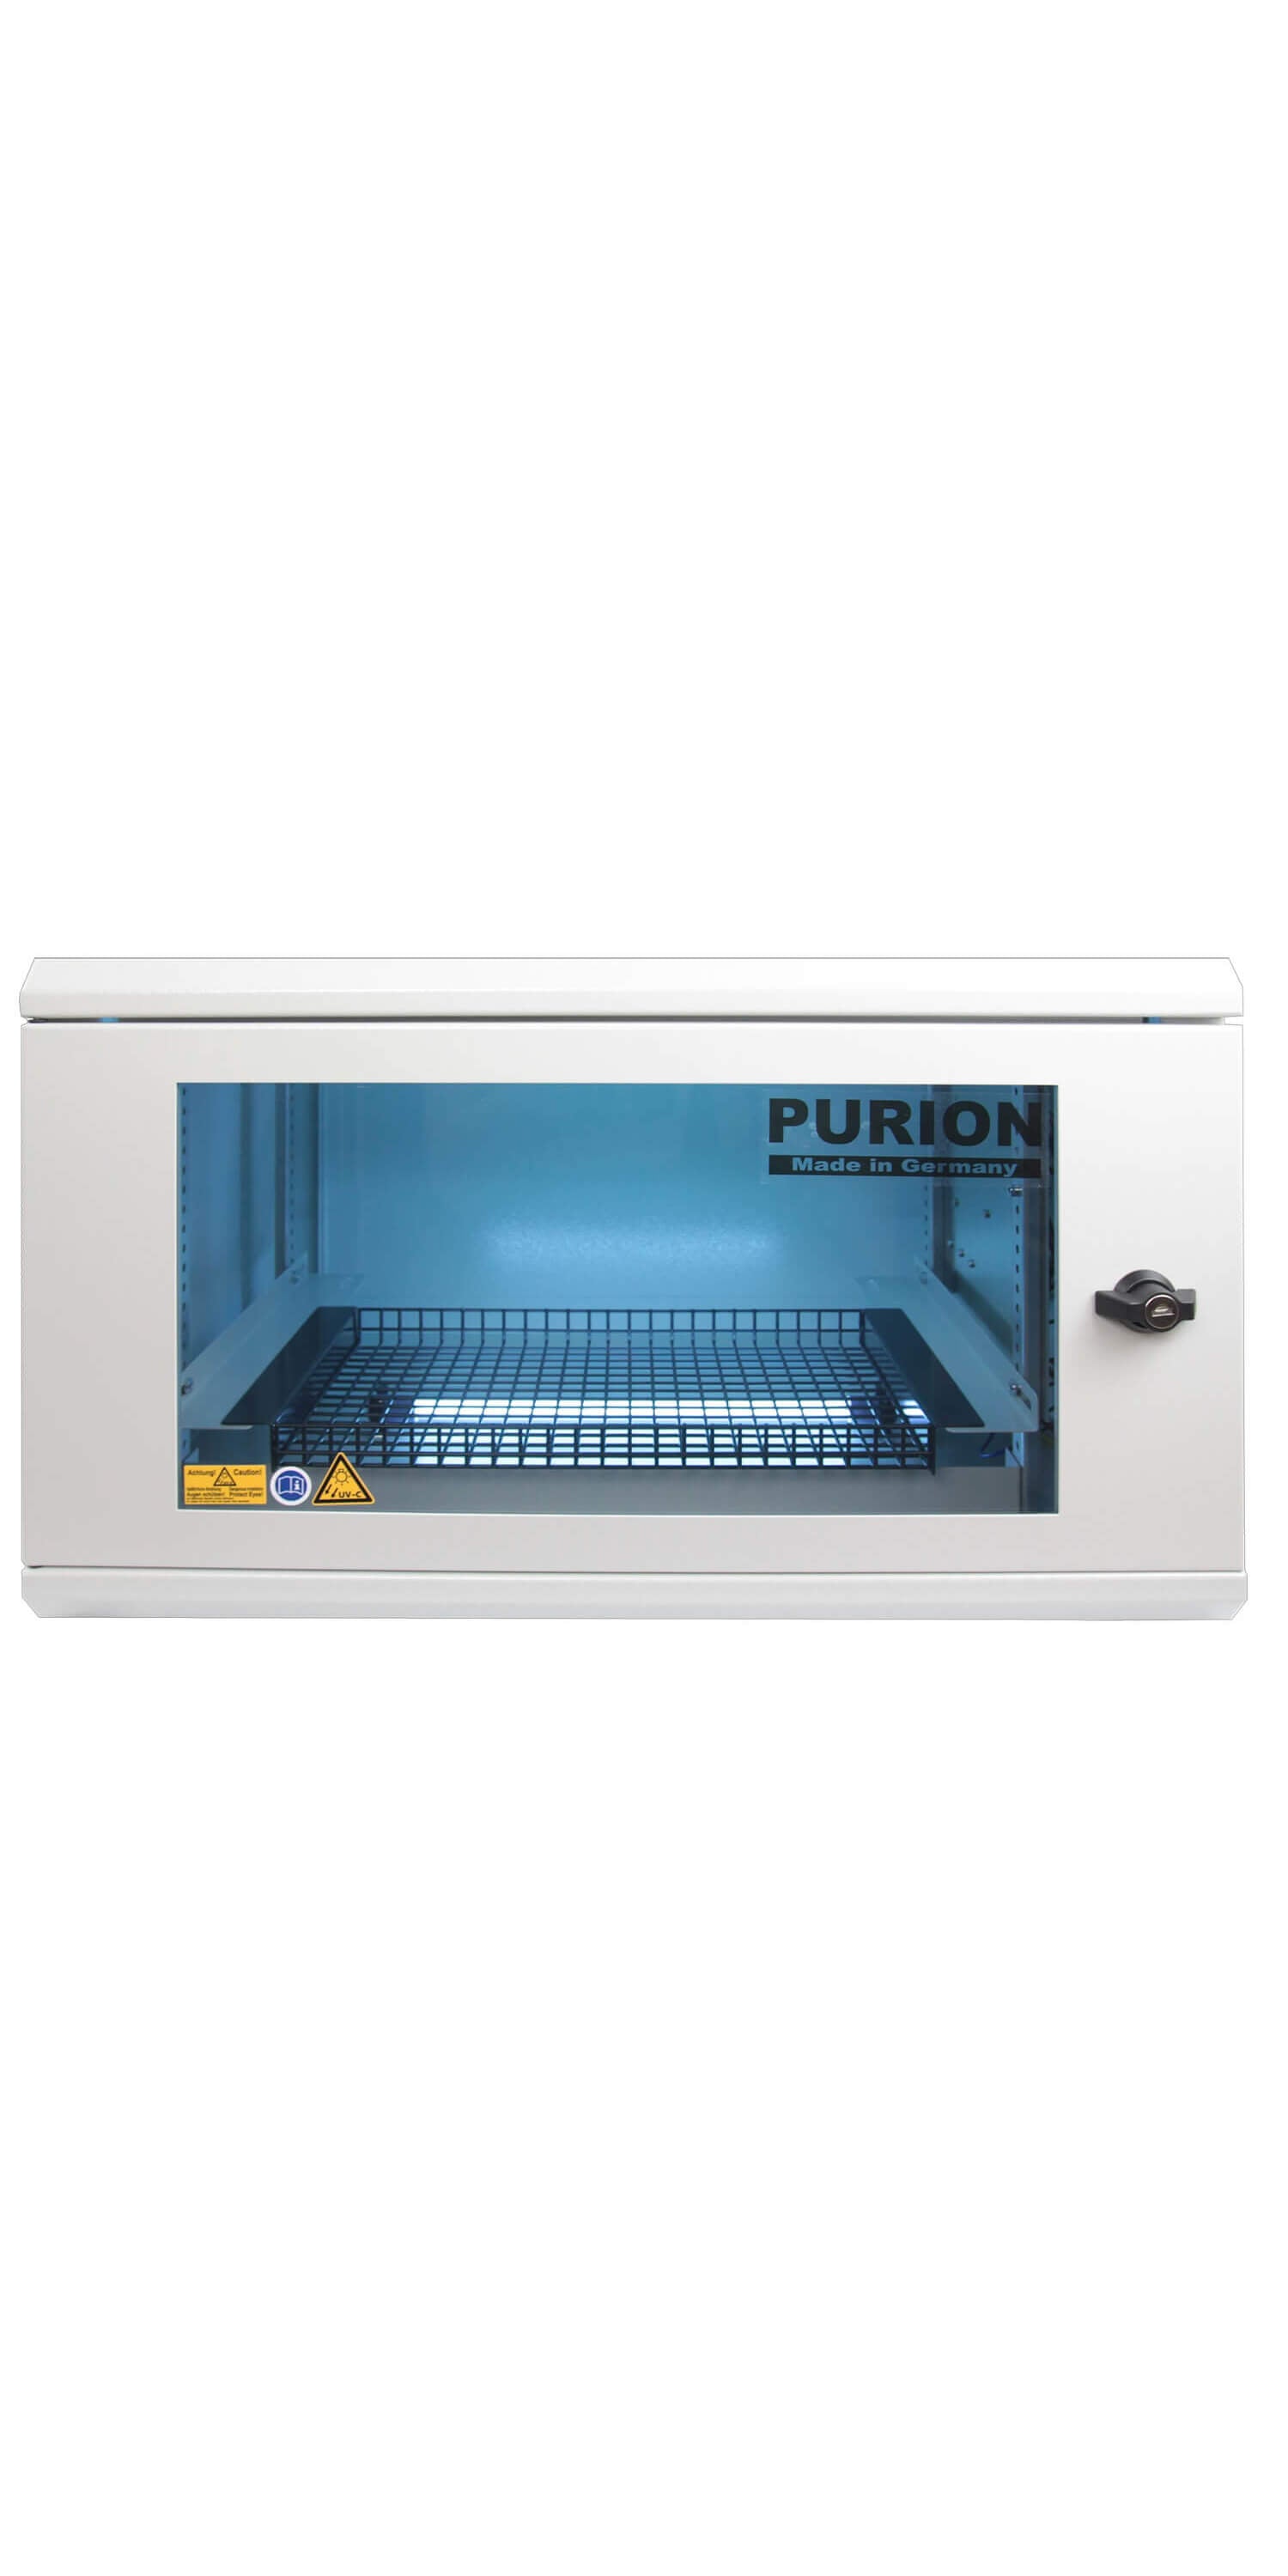 Ein weißer PURION UVC Boxen Medium Bundle-Schrank mit blauem Licht darauf, der mithilfe der UVC-Technologie Gegenstände desinfiziert und so die Hygiene auf effiziente Weise fördert.